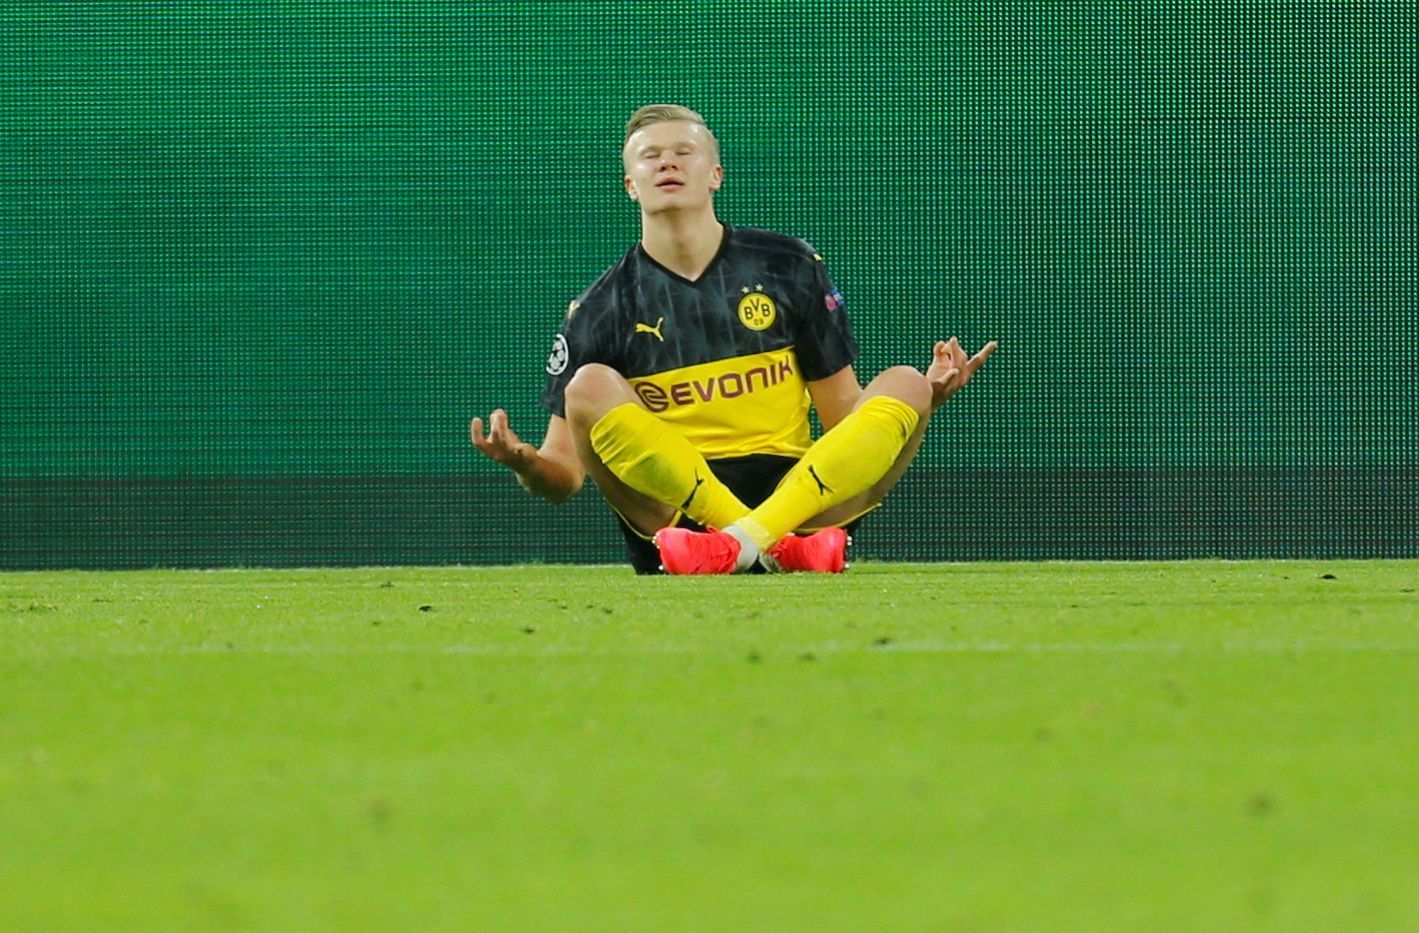 Osmifinále Ligy mistrů 2019/20, Dortmund - PSG: Erling Braut Haaland slaví gól na 1:0